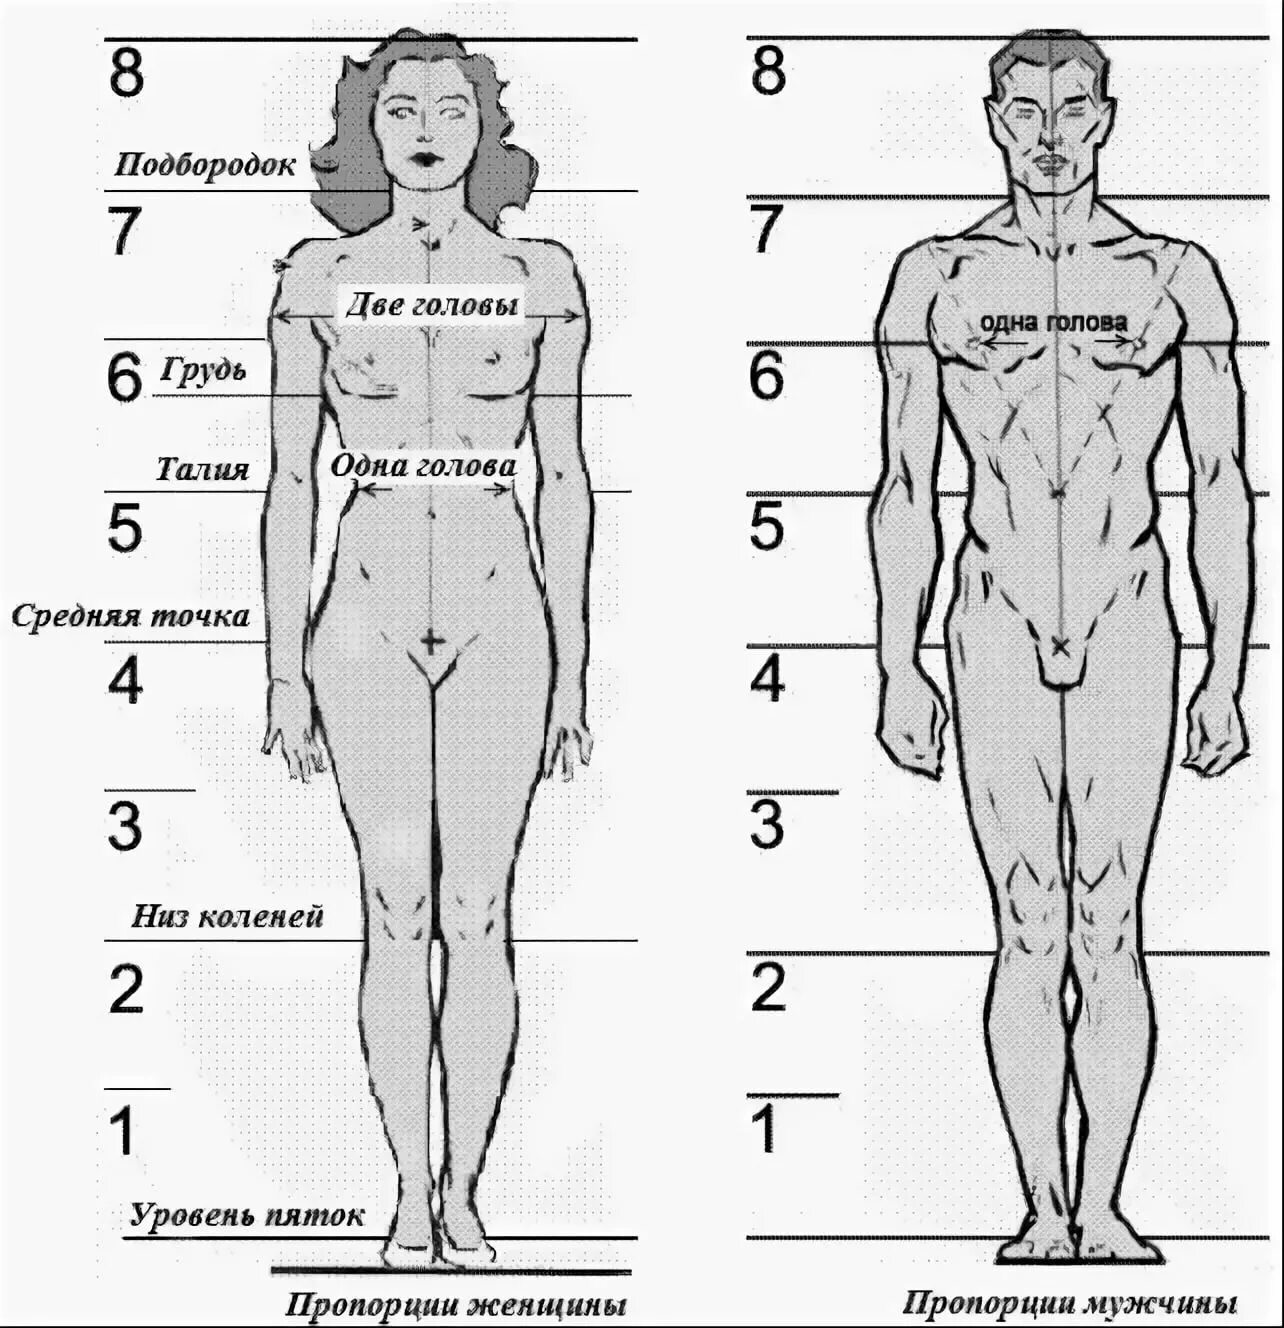 Тело насколько. Пропорции тела человека в головах. Антропометрия пропорции тела человека. Соотношение головы к телу человека. Анатомические пропорции тела человека.